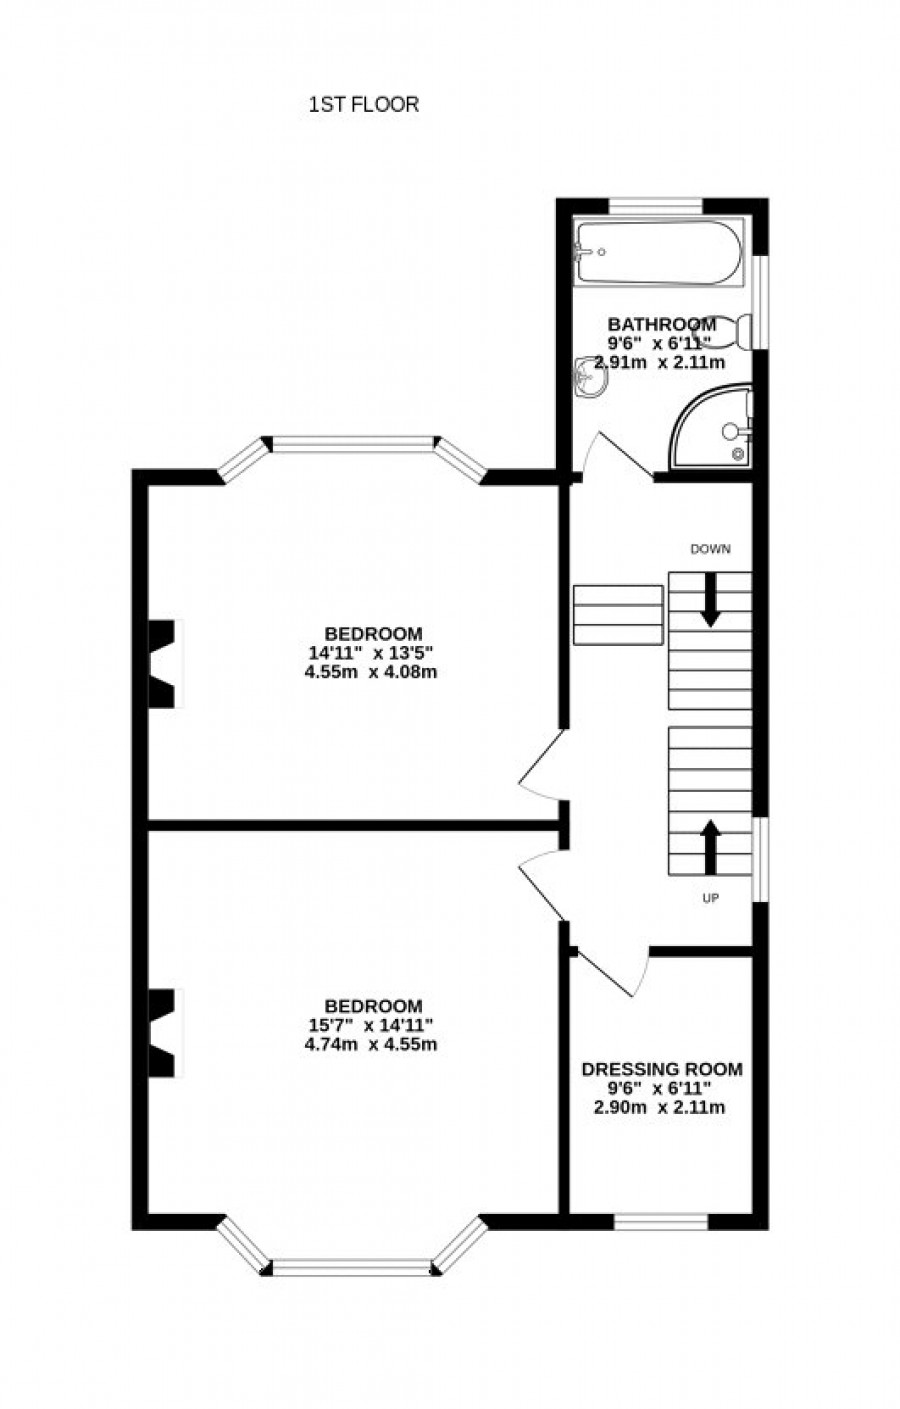 View Floor Plan 3